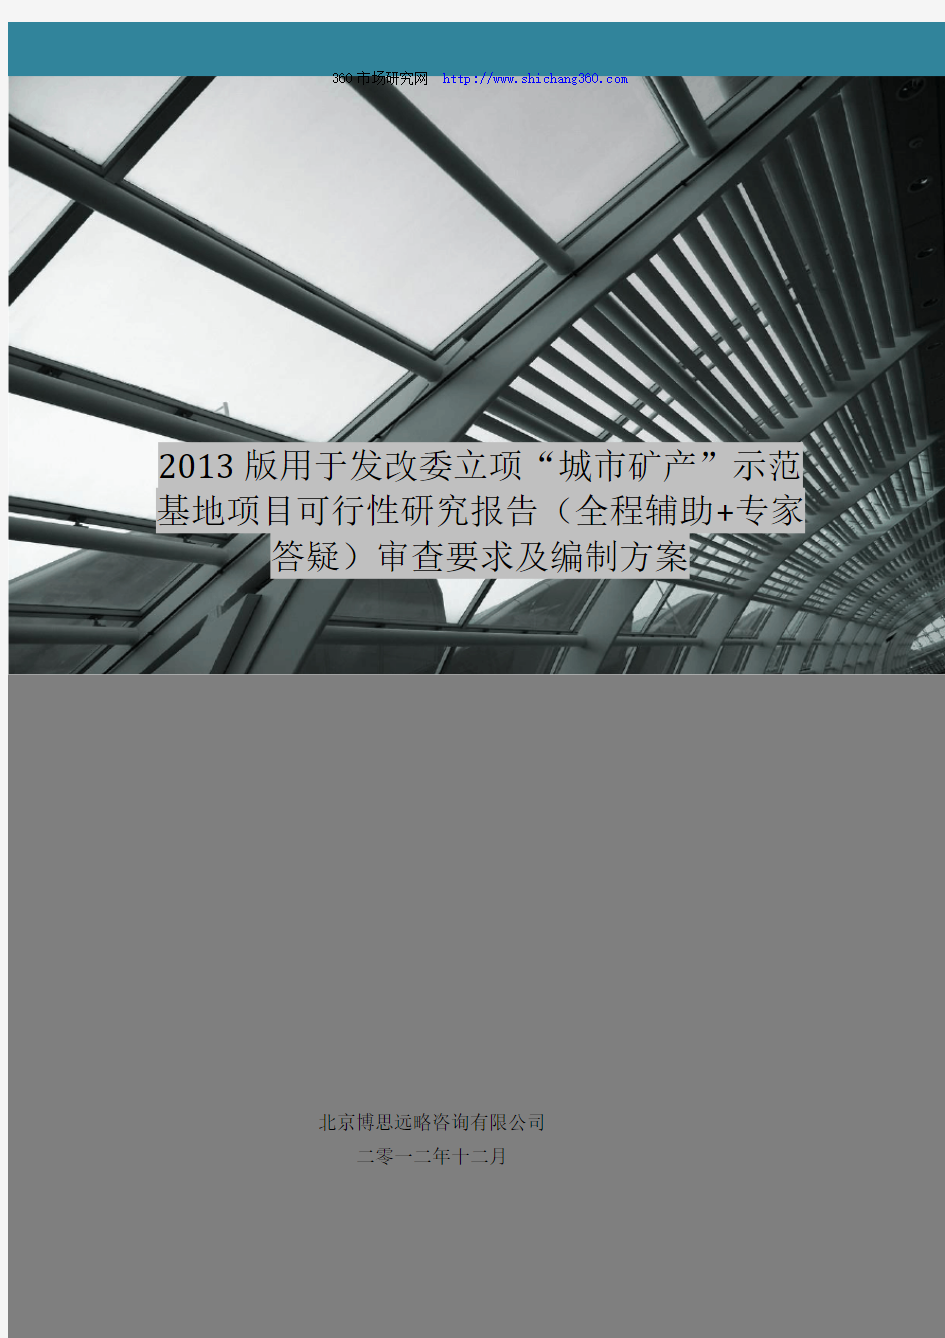 2013版用于立项“城市矿产”示范基地项目可行性研究报告(甲级资质)审查要求及编制方案